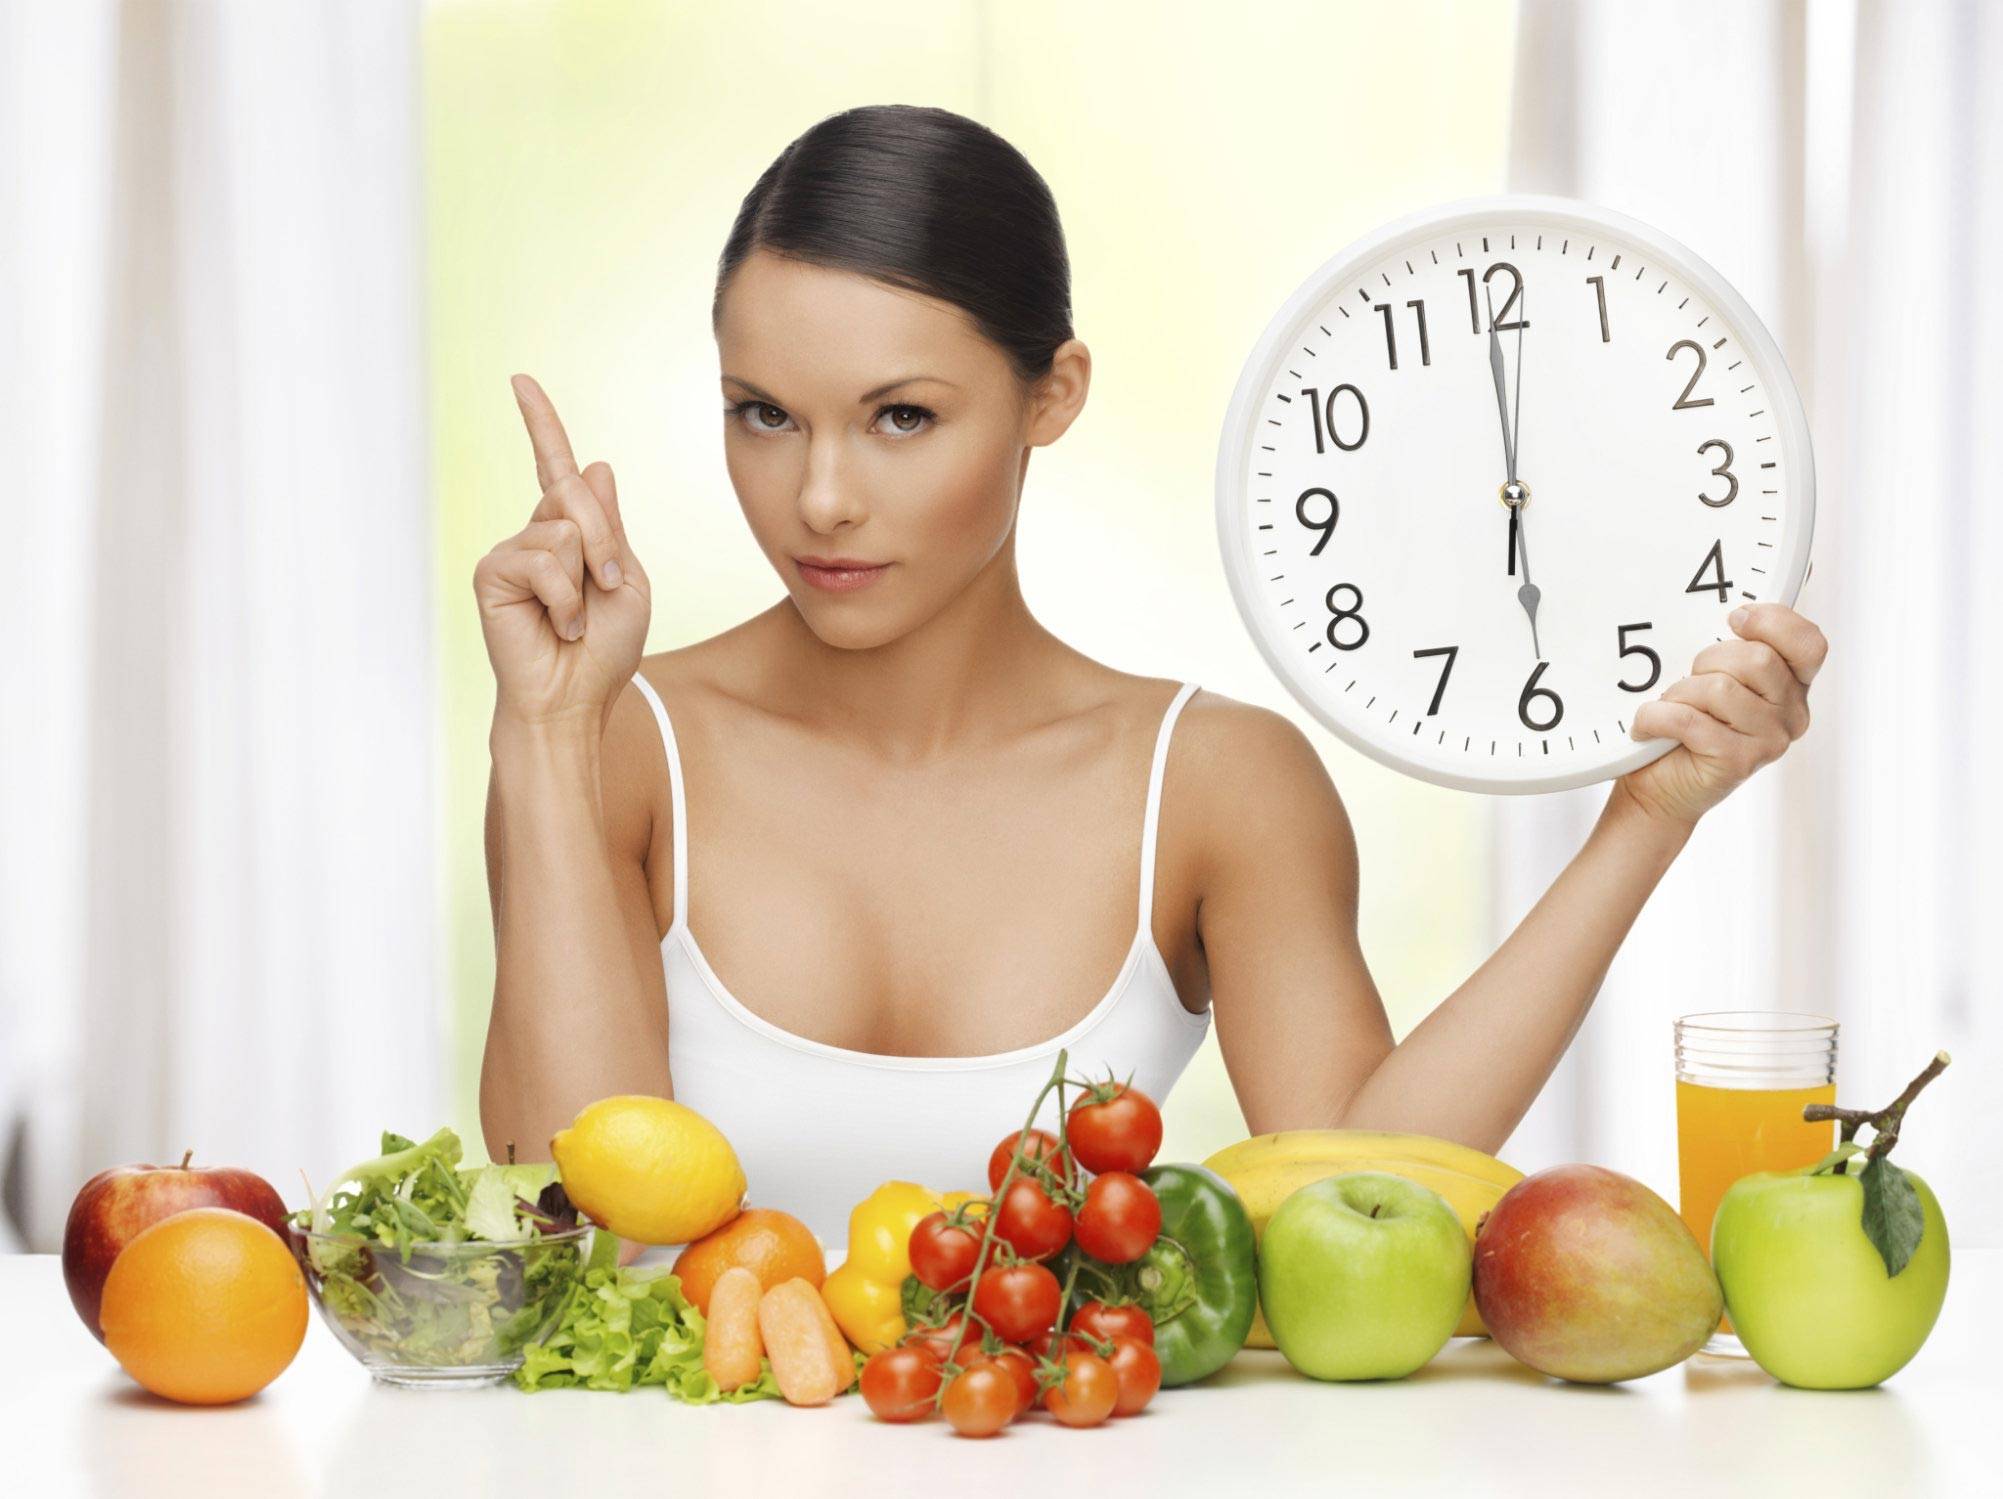 Правильное питание недорого: как похудеть экономно и быстро - дешевое здоровое меню на неделю